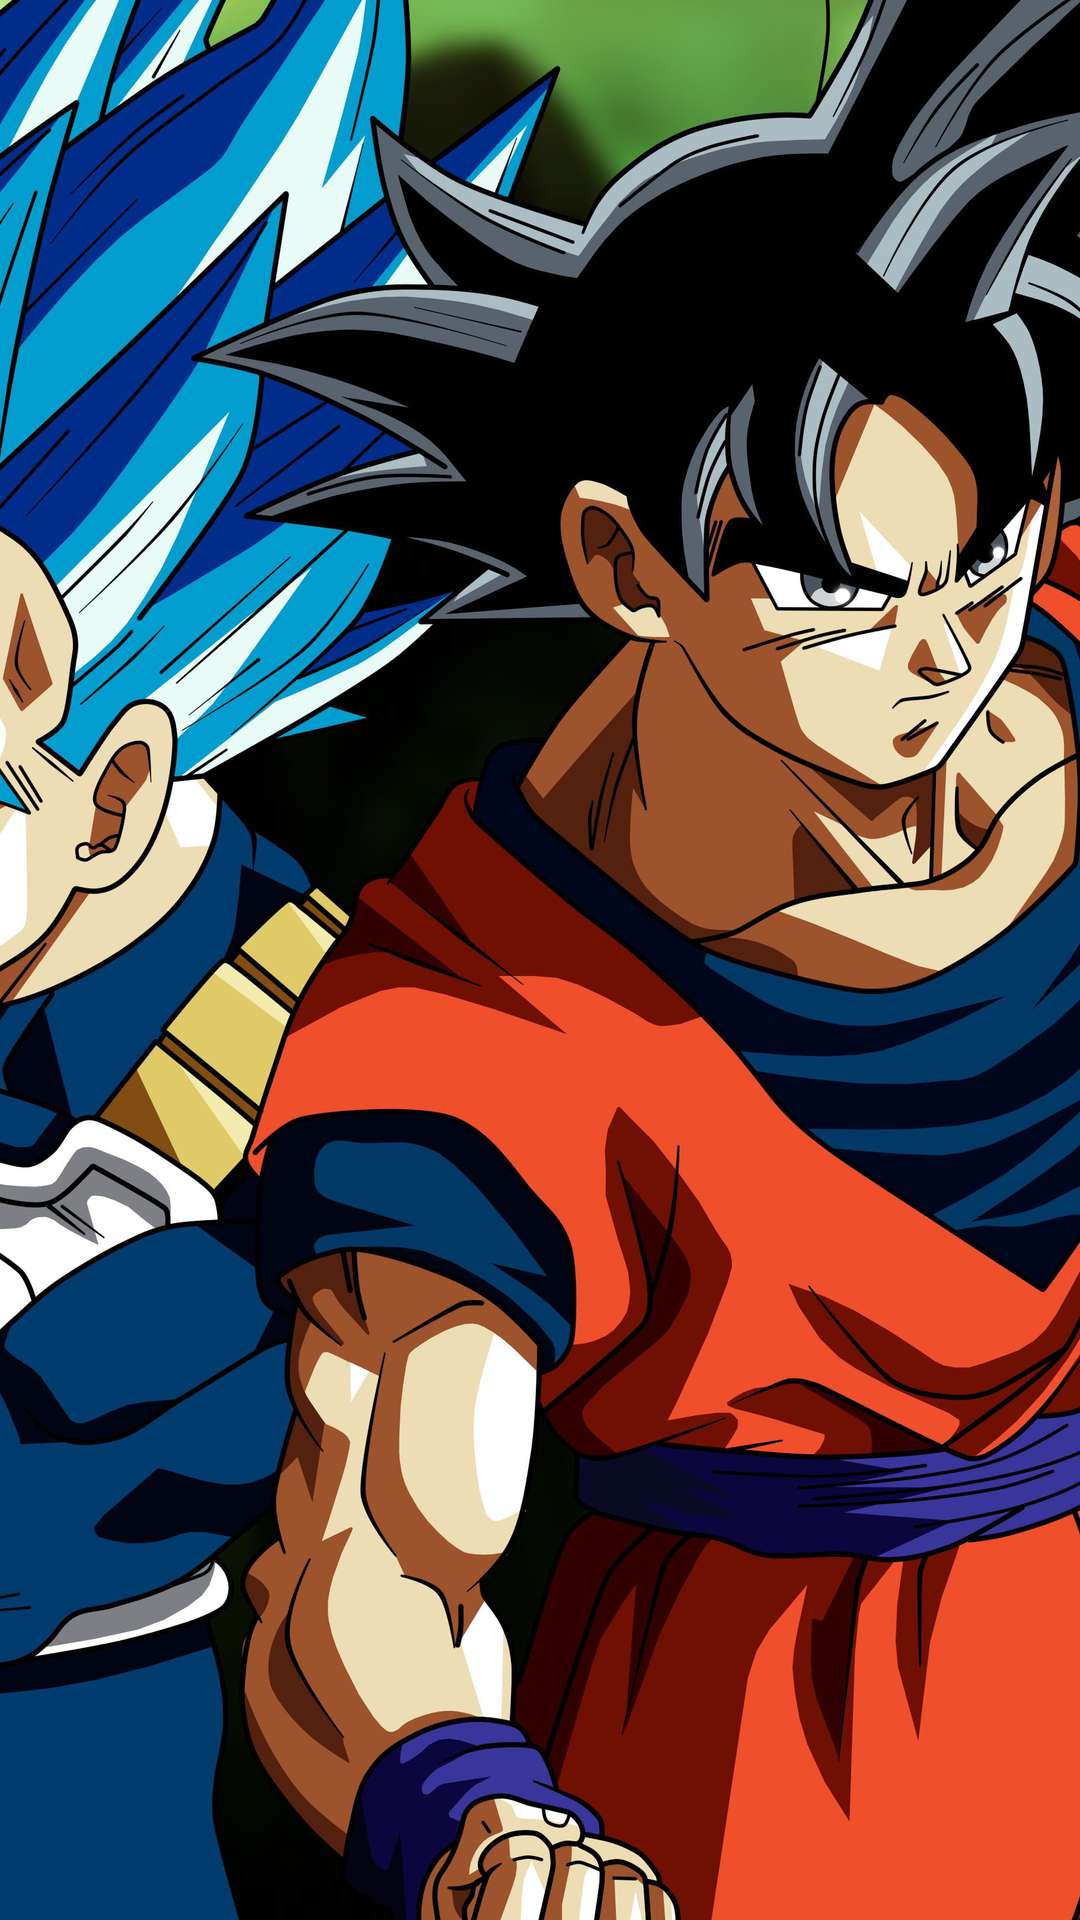 Goku vs Vegeta wallpaper by Zenitsusan - Download on ZEDGE™ | de0b